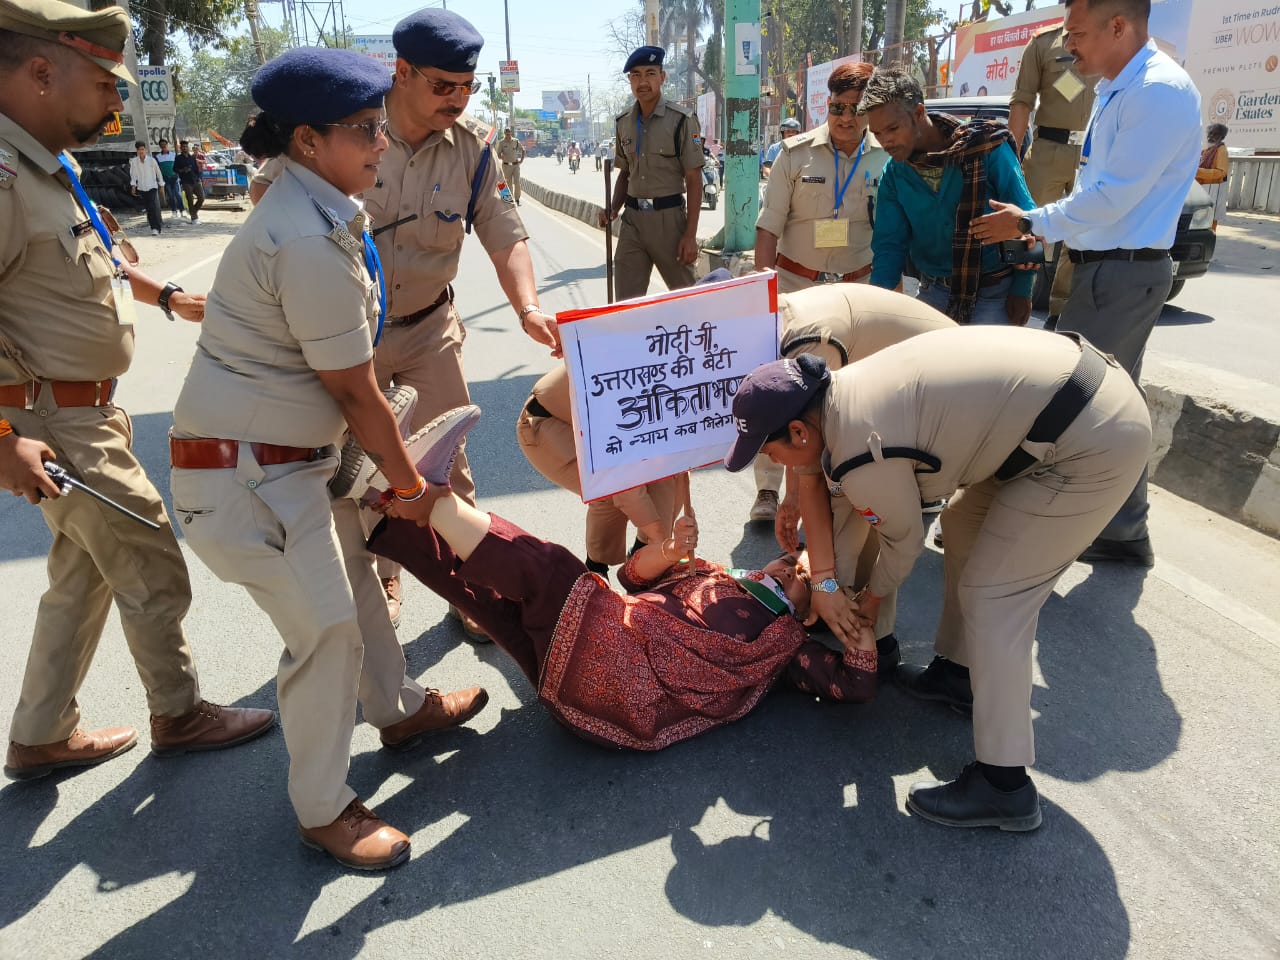 रुद्रपुर रैली में पीएम द्वारा लगाए गए सभी आरोप झूठ का पुलिंदा,उत्तराखंड प्रदेश महिला कांग्रेस कमेटी की अध्यक्ष और वरिष्ठ उपाध्यक्ष सहित महानगर महिला कांग्रेस कमेटी की अध्यक्ष को पुलिस ने गिरफ्तार।